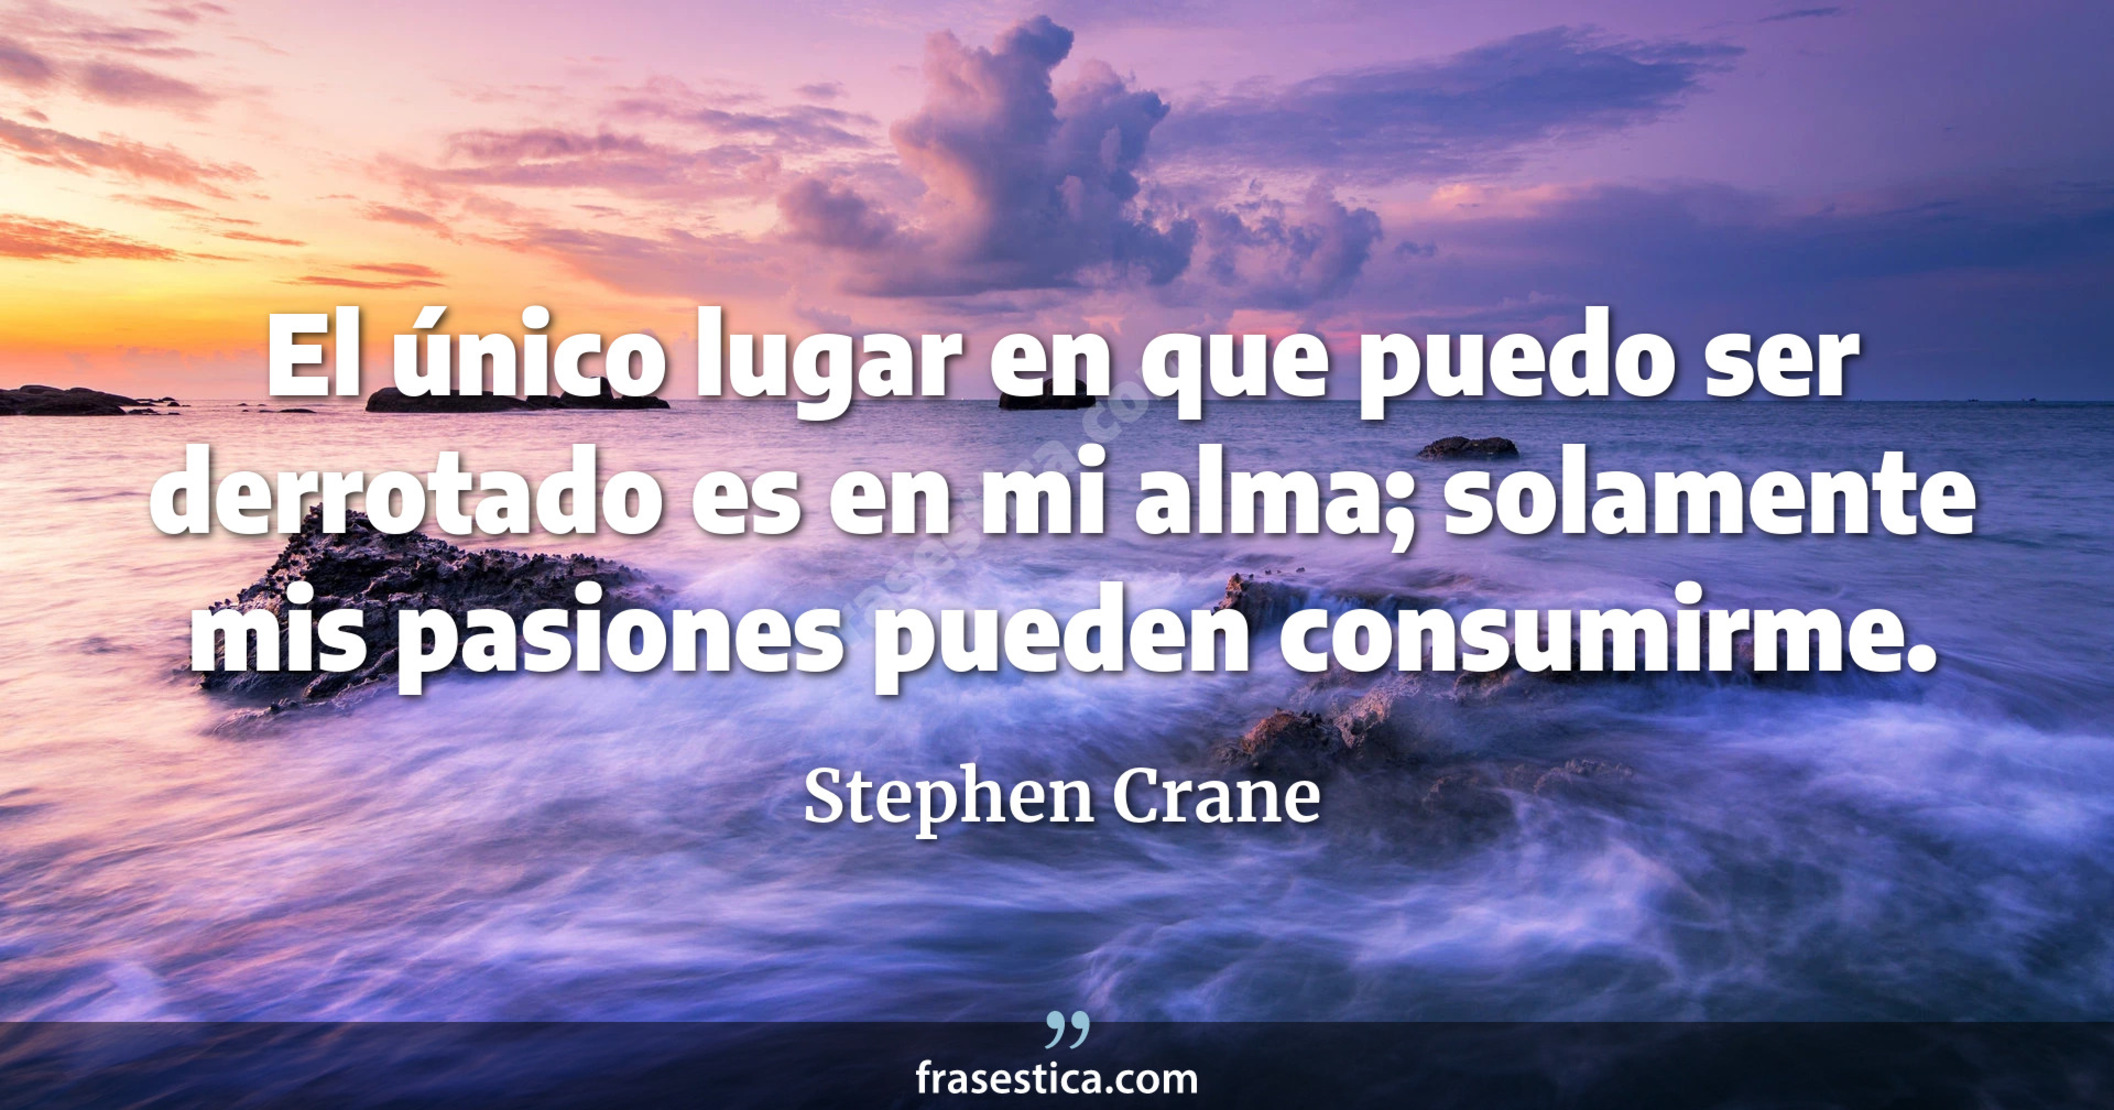 El único lugar en que puedo ser derrotado es en mi alma; solamente mis pasiones pueden consumirme. - Stephen Crane